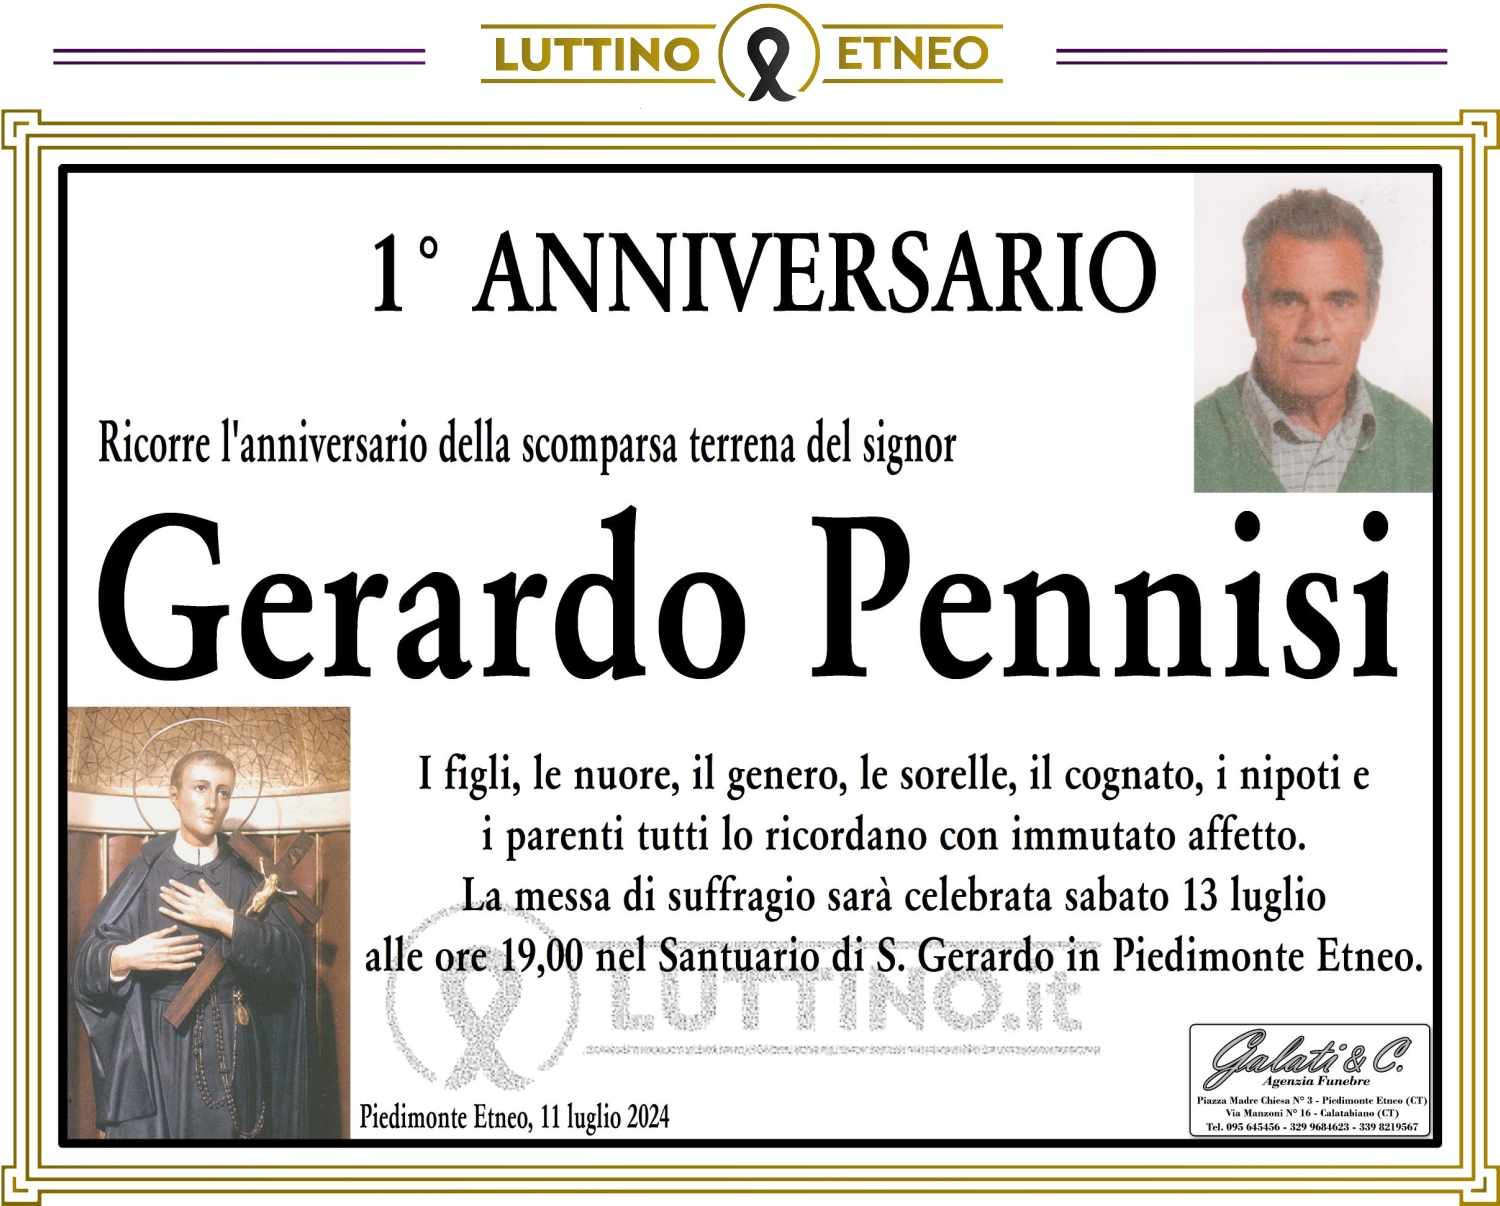 Gerardo Pennisi